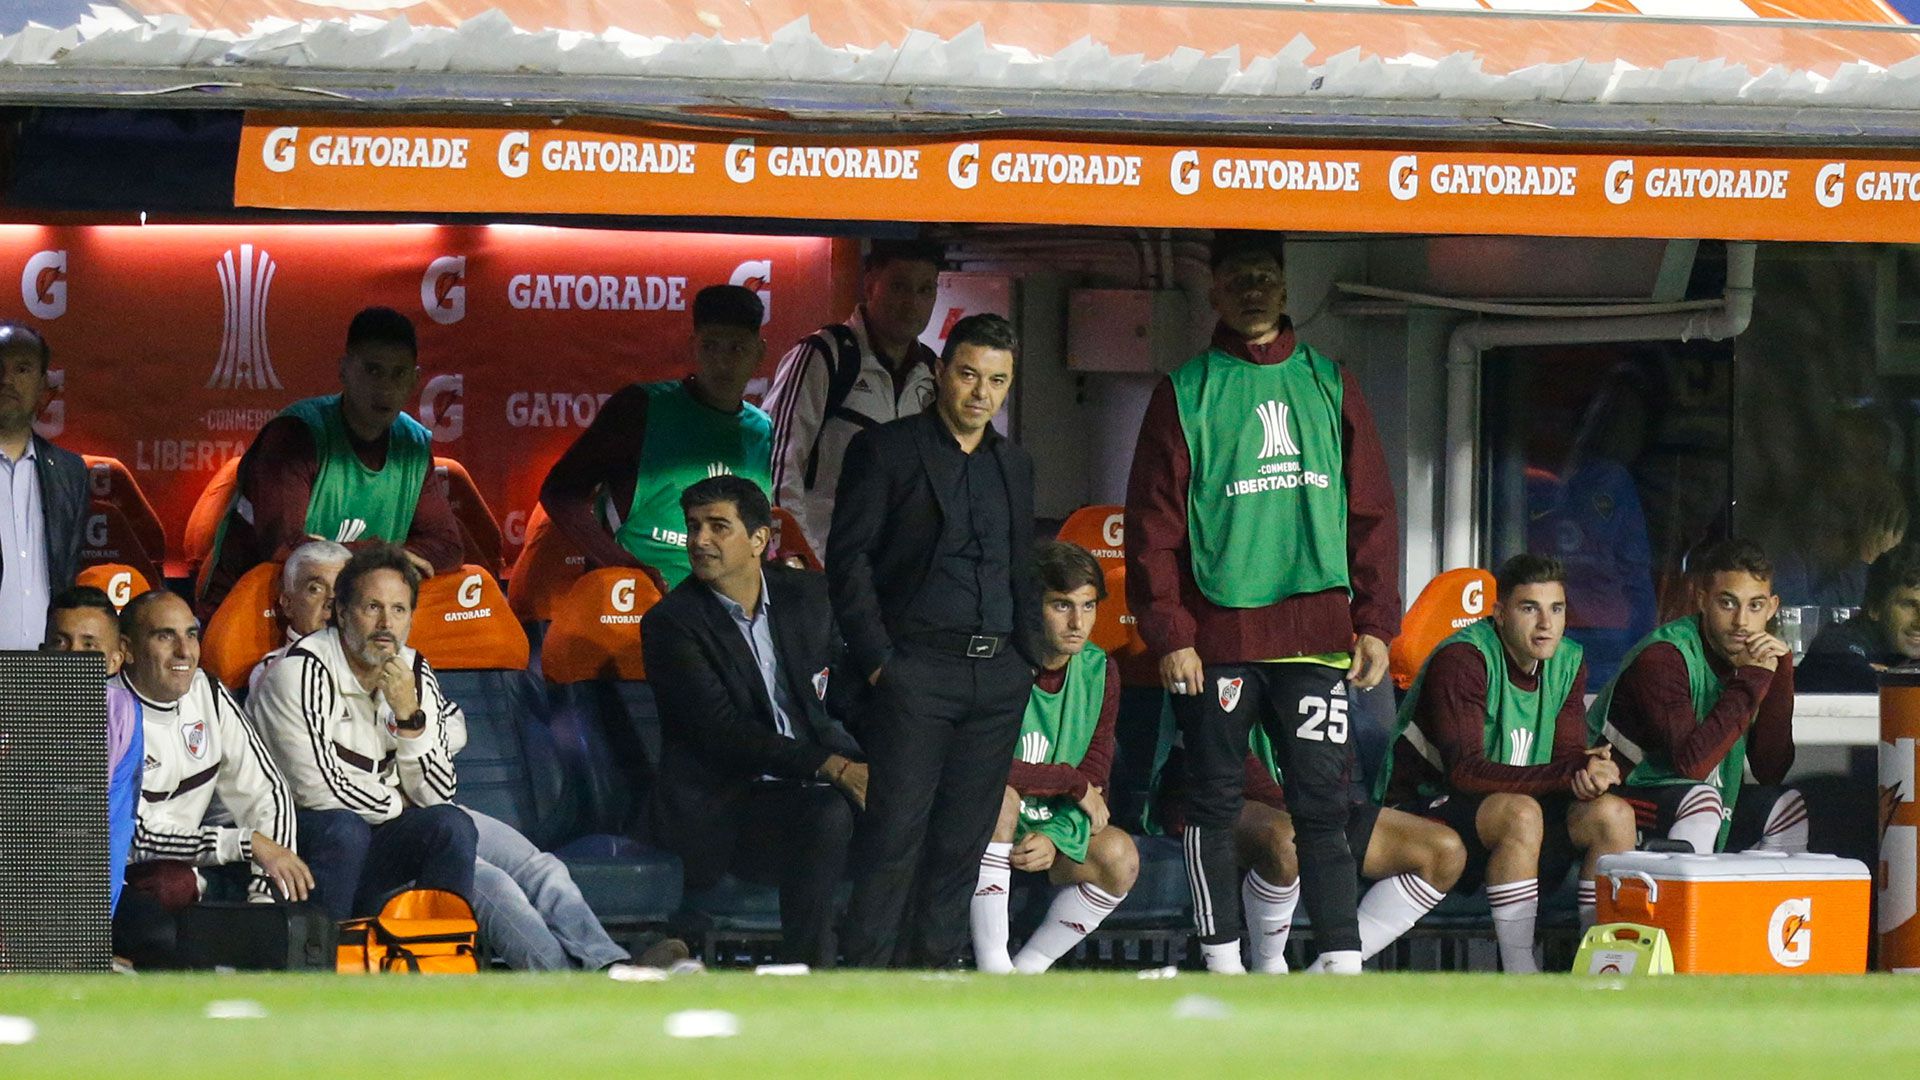 La mirada fija de Marcelo Gallardo durante la revancha contra Boca (Nicolás Aboaf)